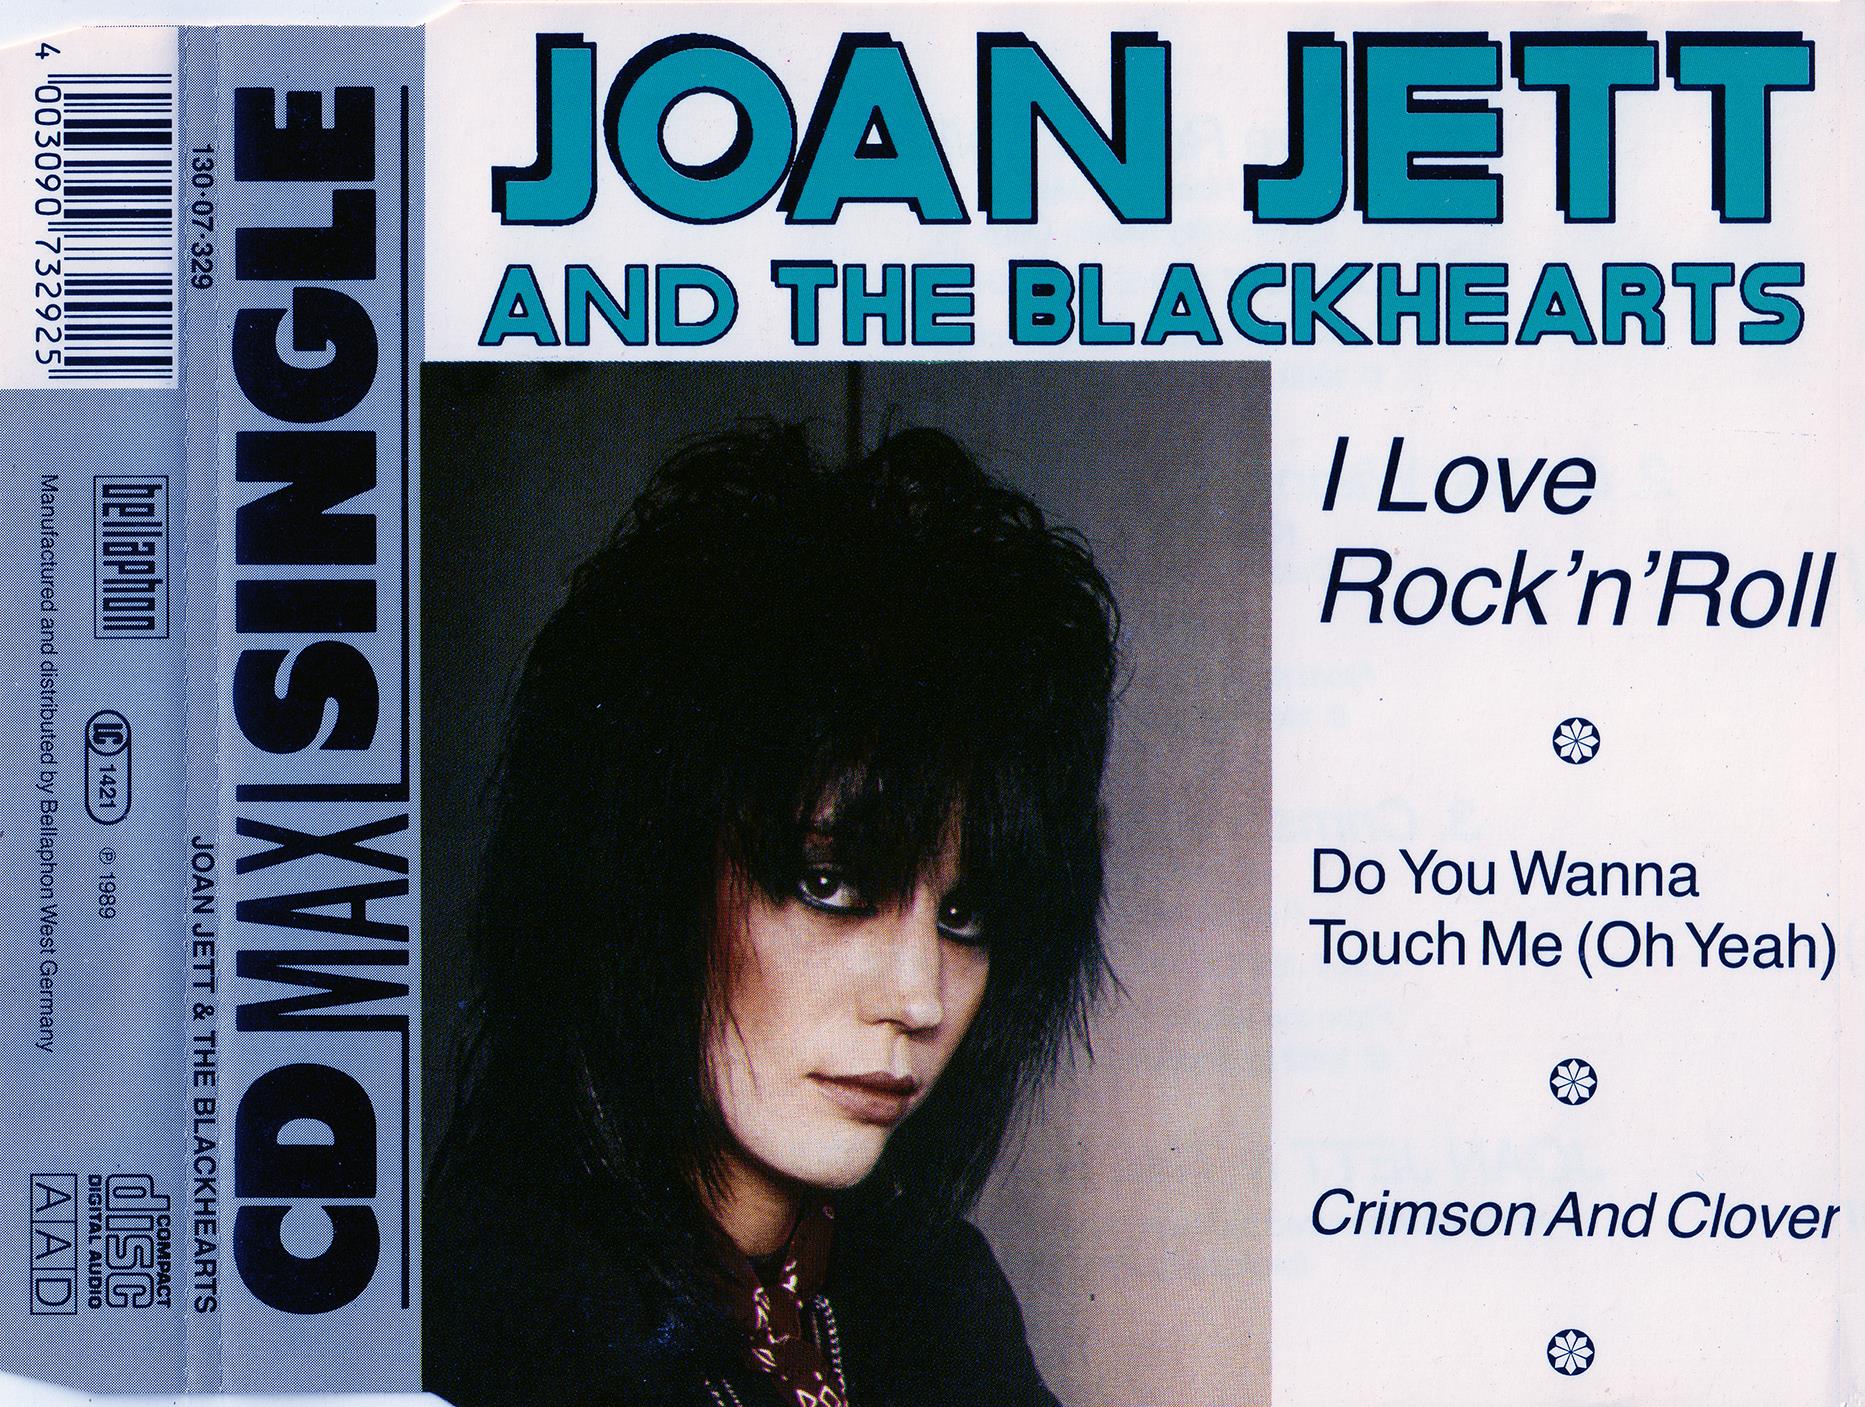 Joan Jett & The Blackhearts - I Love Rock 'N' Roll (Cdm)[1982]